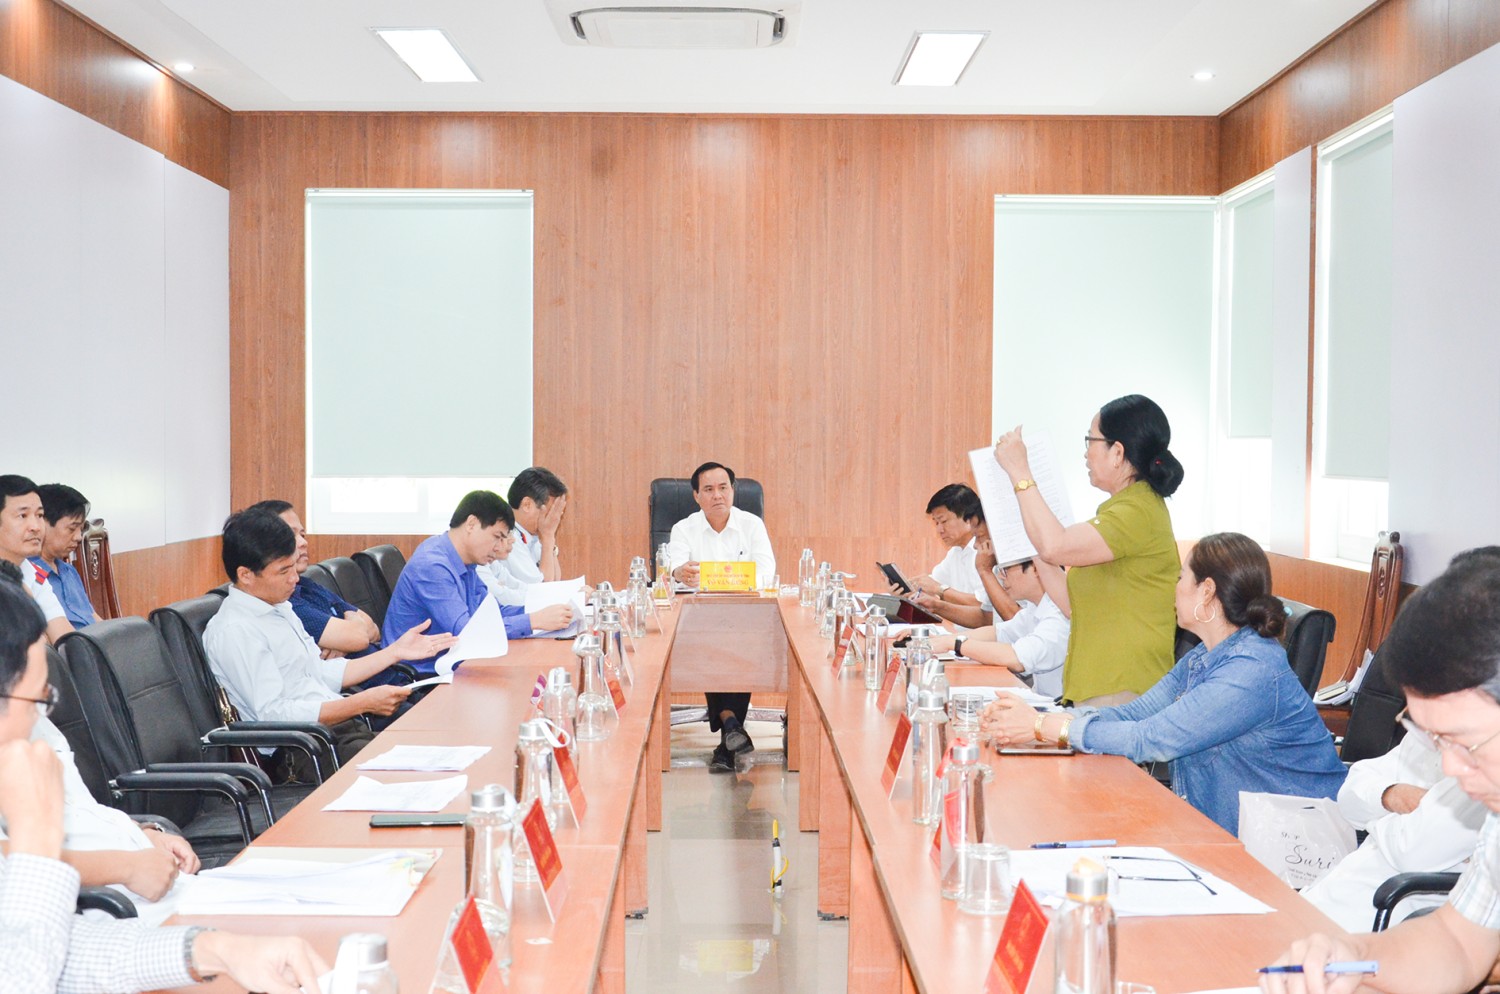 Chủ tịch UBND tỉnh Võ Văn Hưng nghe đại diện nhóm 4 hộ dân ở thôn Phương Hải, xã Hải Ba, huyện Hải Lăng trình bày kiến nghị xin được cấp giấy CNQSD đất theo hiện trạng sử dụng tại phiên tiếp công dân tháng 9/2022 - Ảnh: L.M